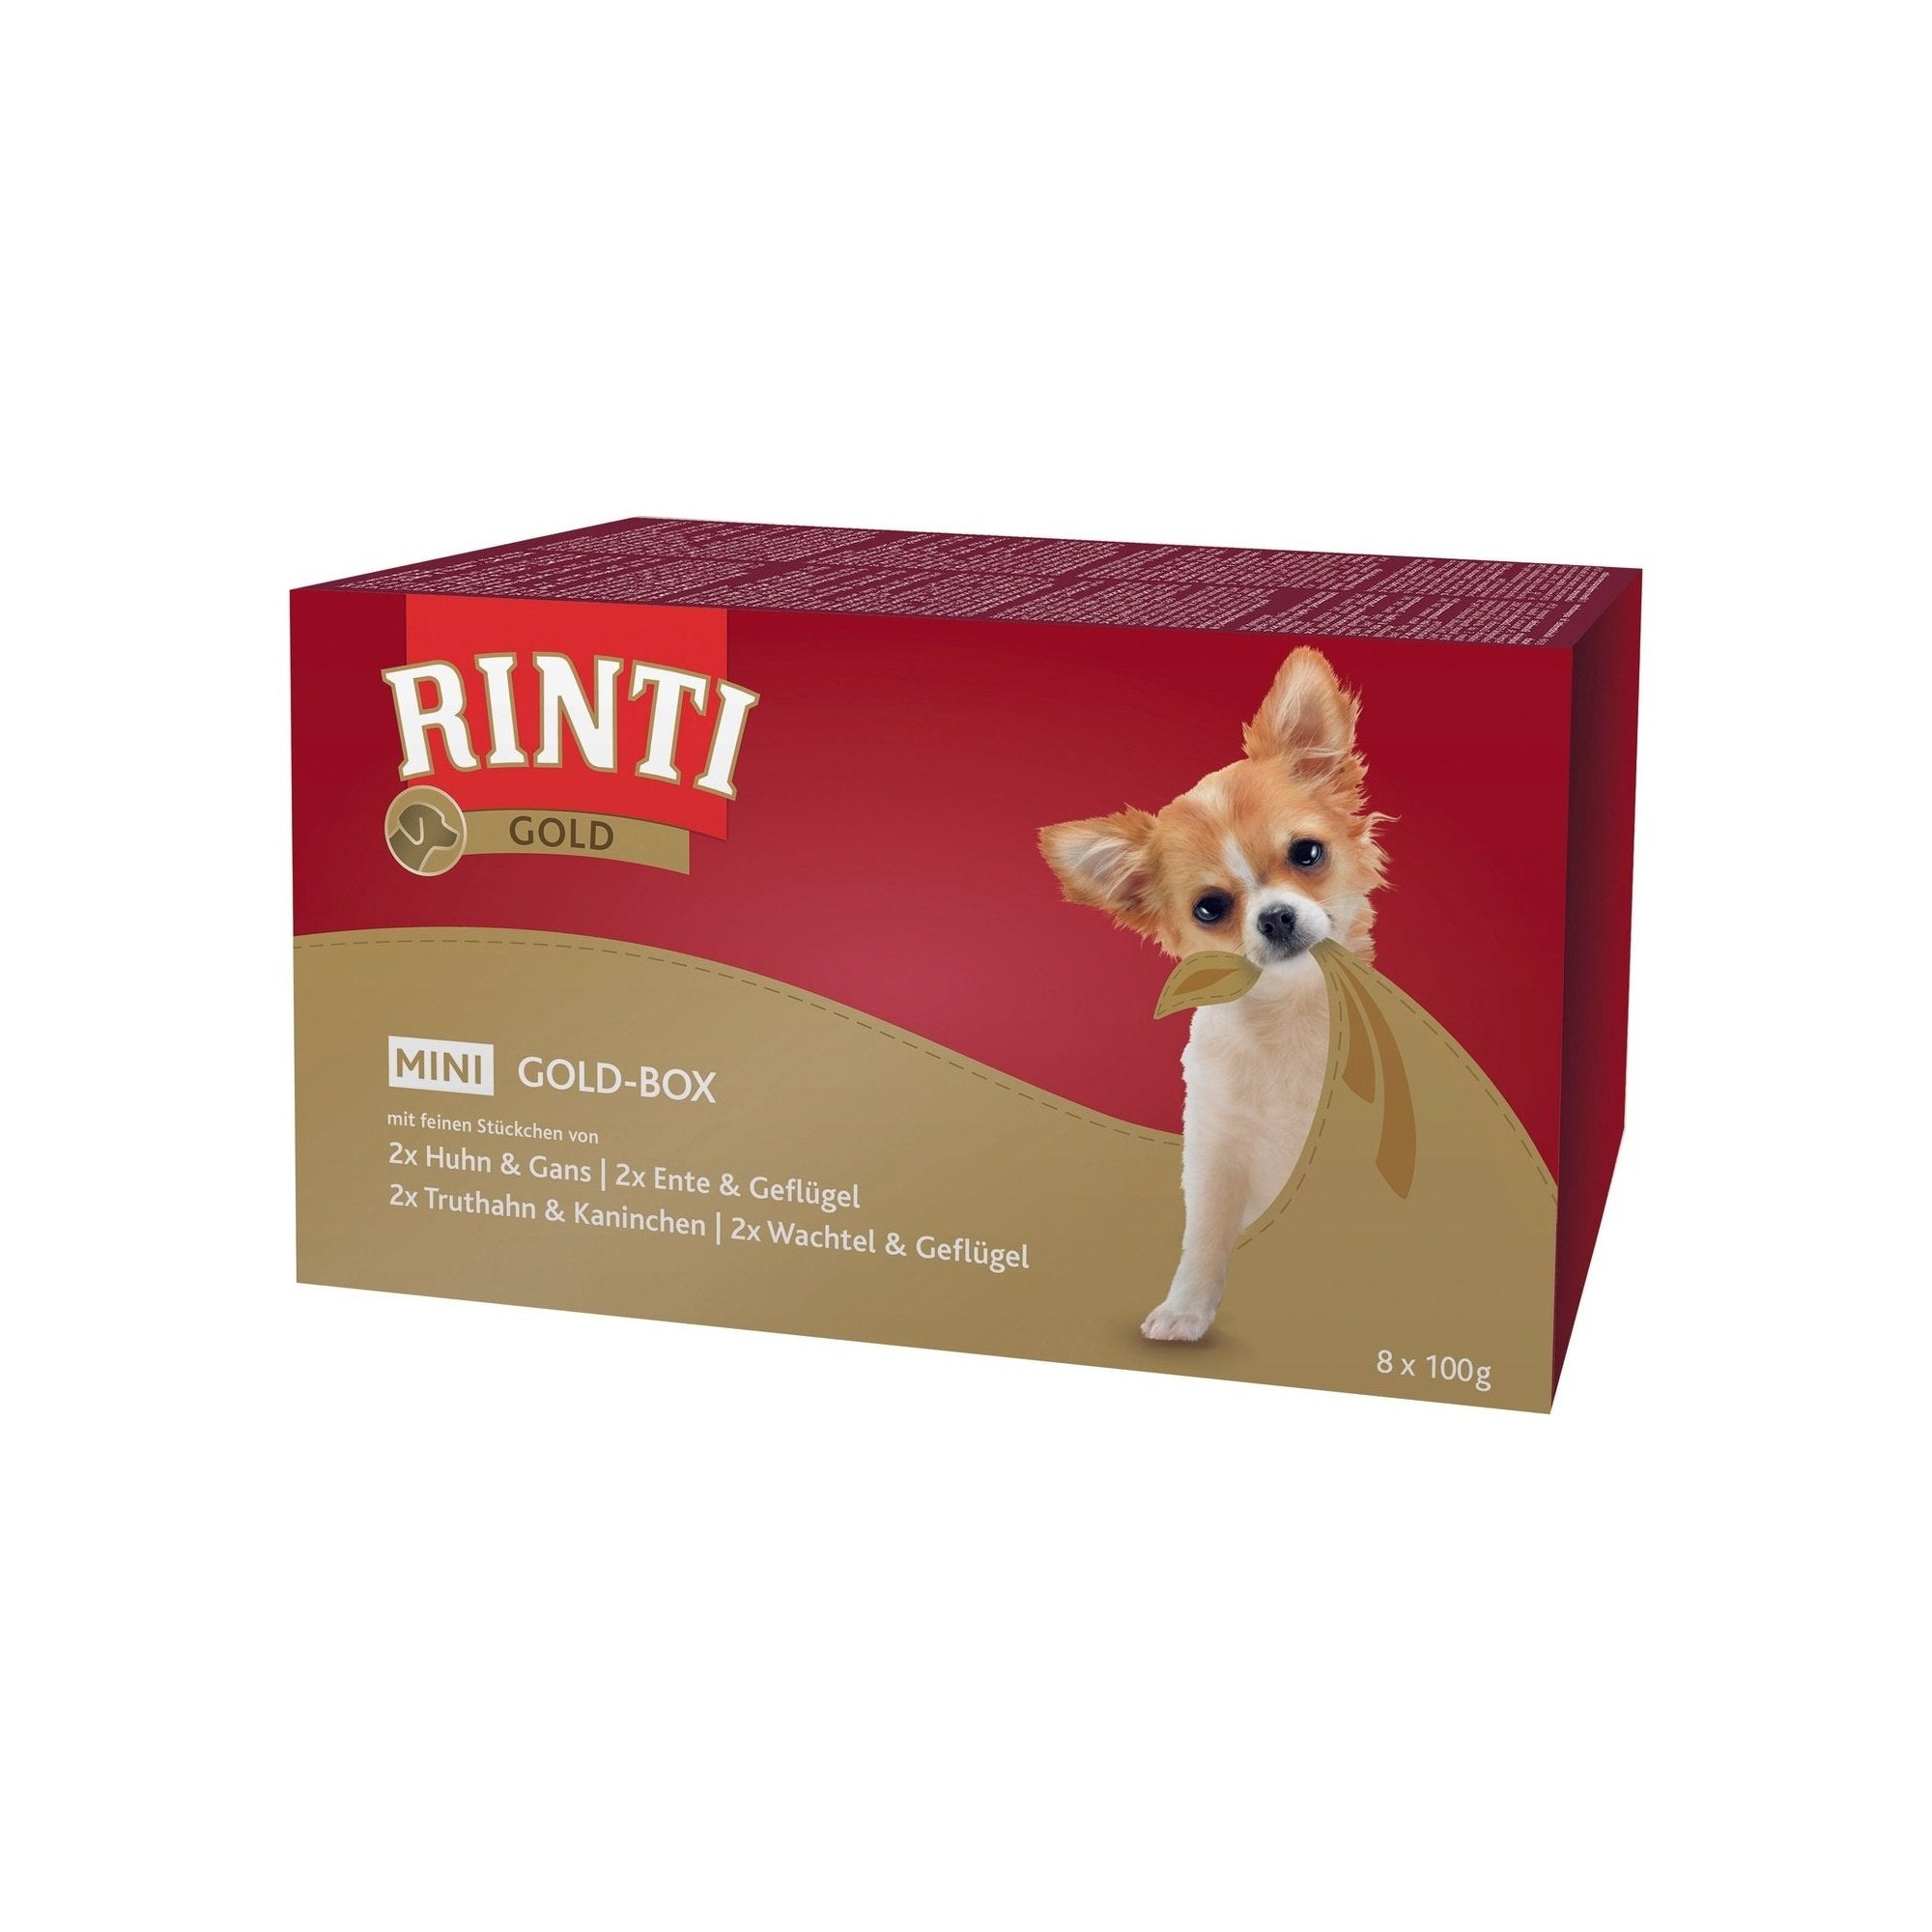 Artikel mit dem Namen Rinti Gold Mini Goldbox im Shop von zoo.de , dem Onlineshop für nachhaltiges Hundefutter und Katzenfutter.